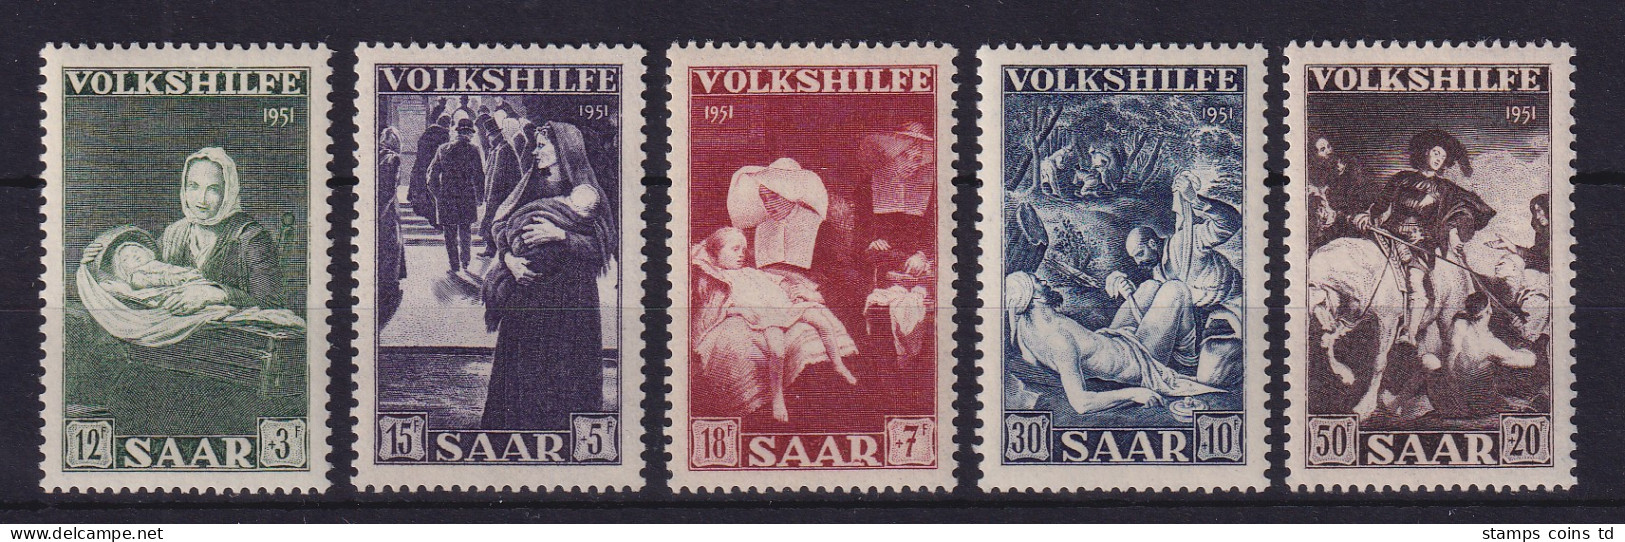 Saarland 1951 Volkshilfe  Mi.-Nr. 309-313 Postfrisch ** - Nuovi